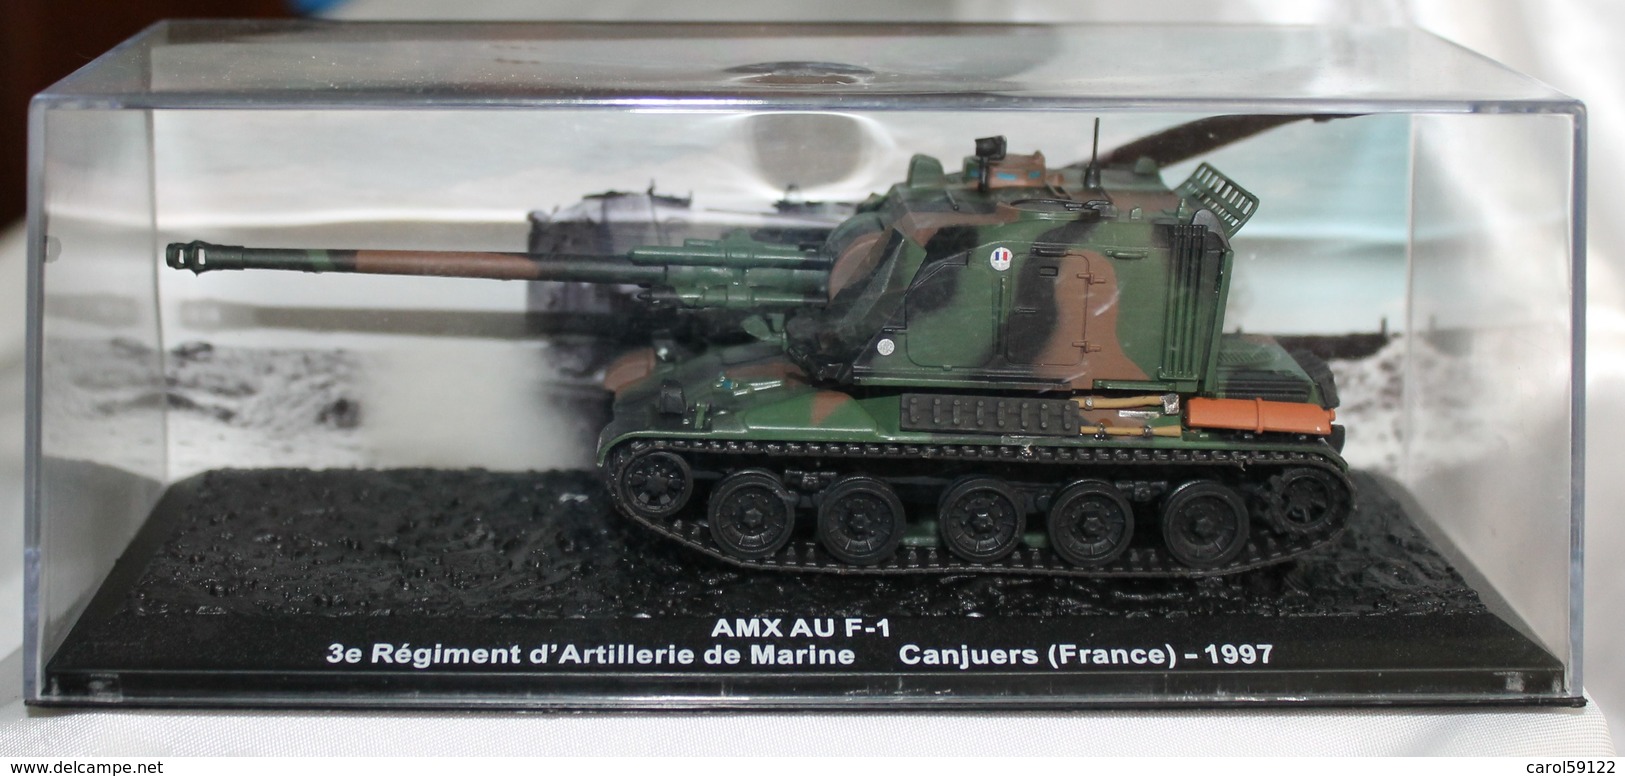 Maquette AMX AU F-1 1997 - Vehicles